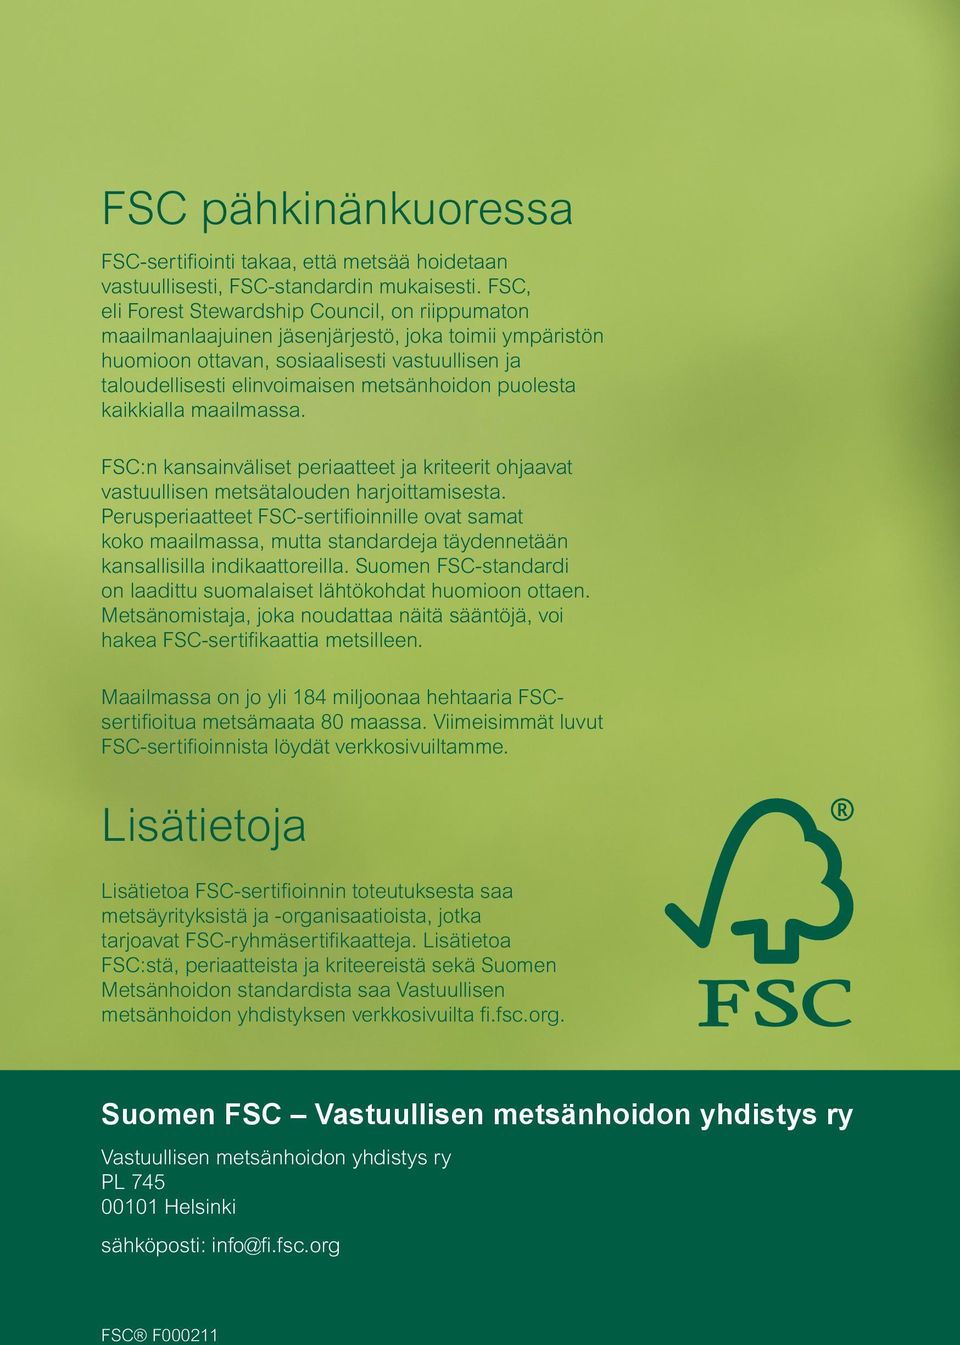 puolesta kaikkialla maailmassa. FSC:n kansainväliset periaatteet ja kriteerit ohjaavat vastuullisen metsätalouden harjoittamisesta.